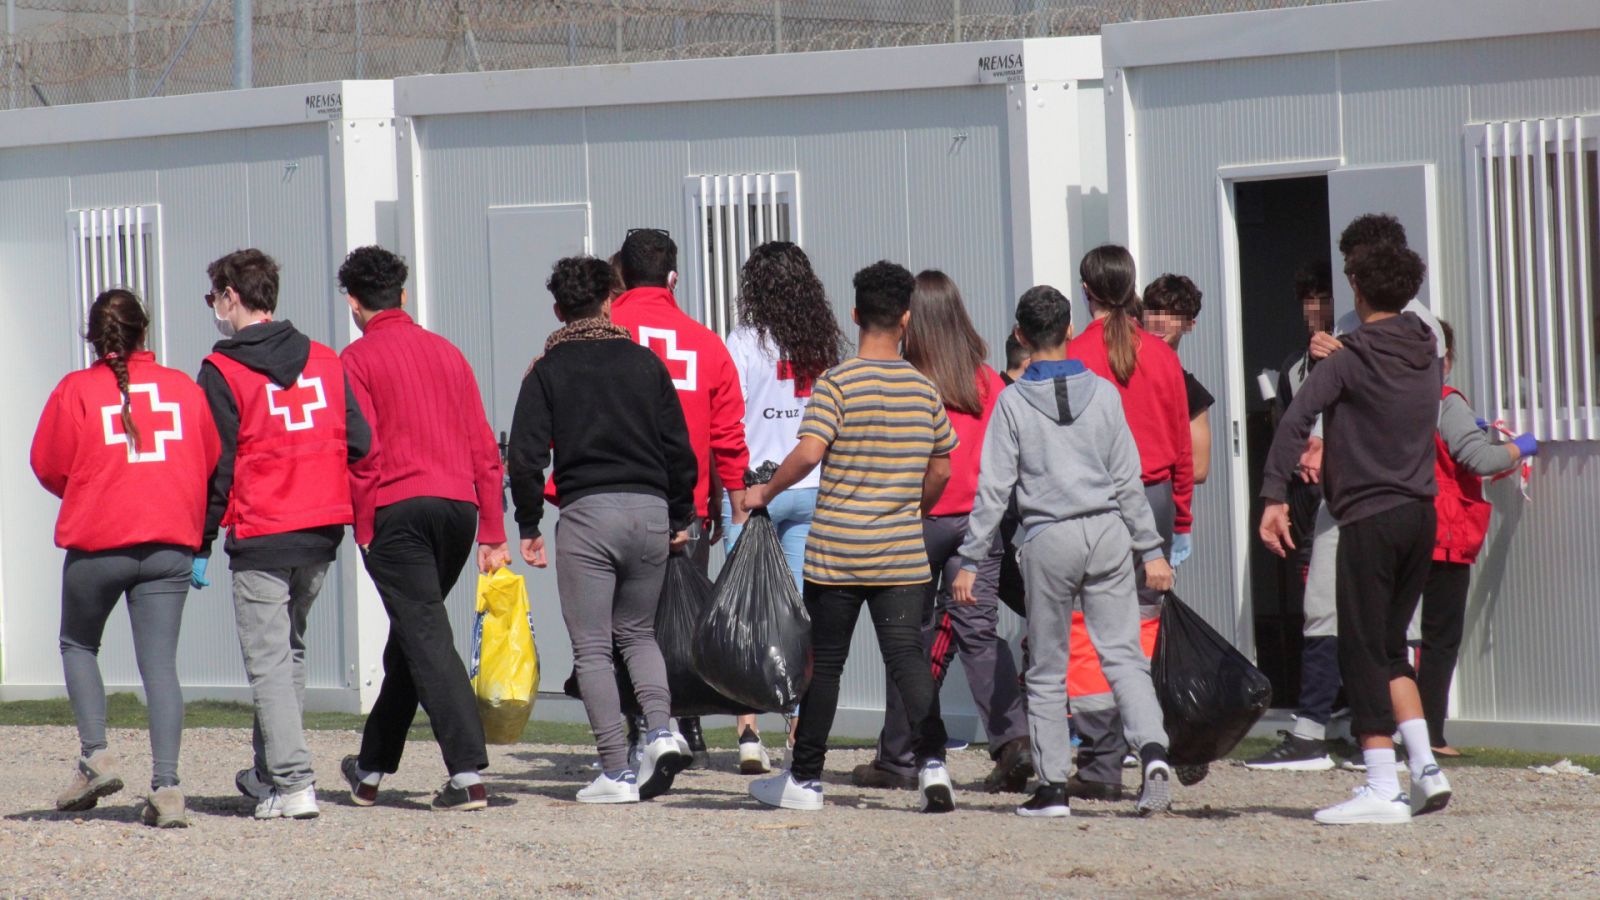 24 horas - Cruz Roja Ceuta: "Están llegando muchísimos menores, estamos desbordados" - Escuchar ahora